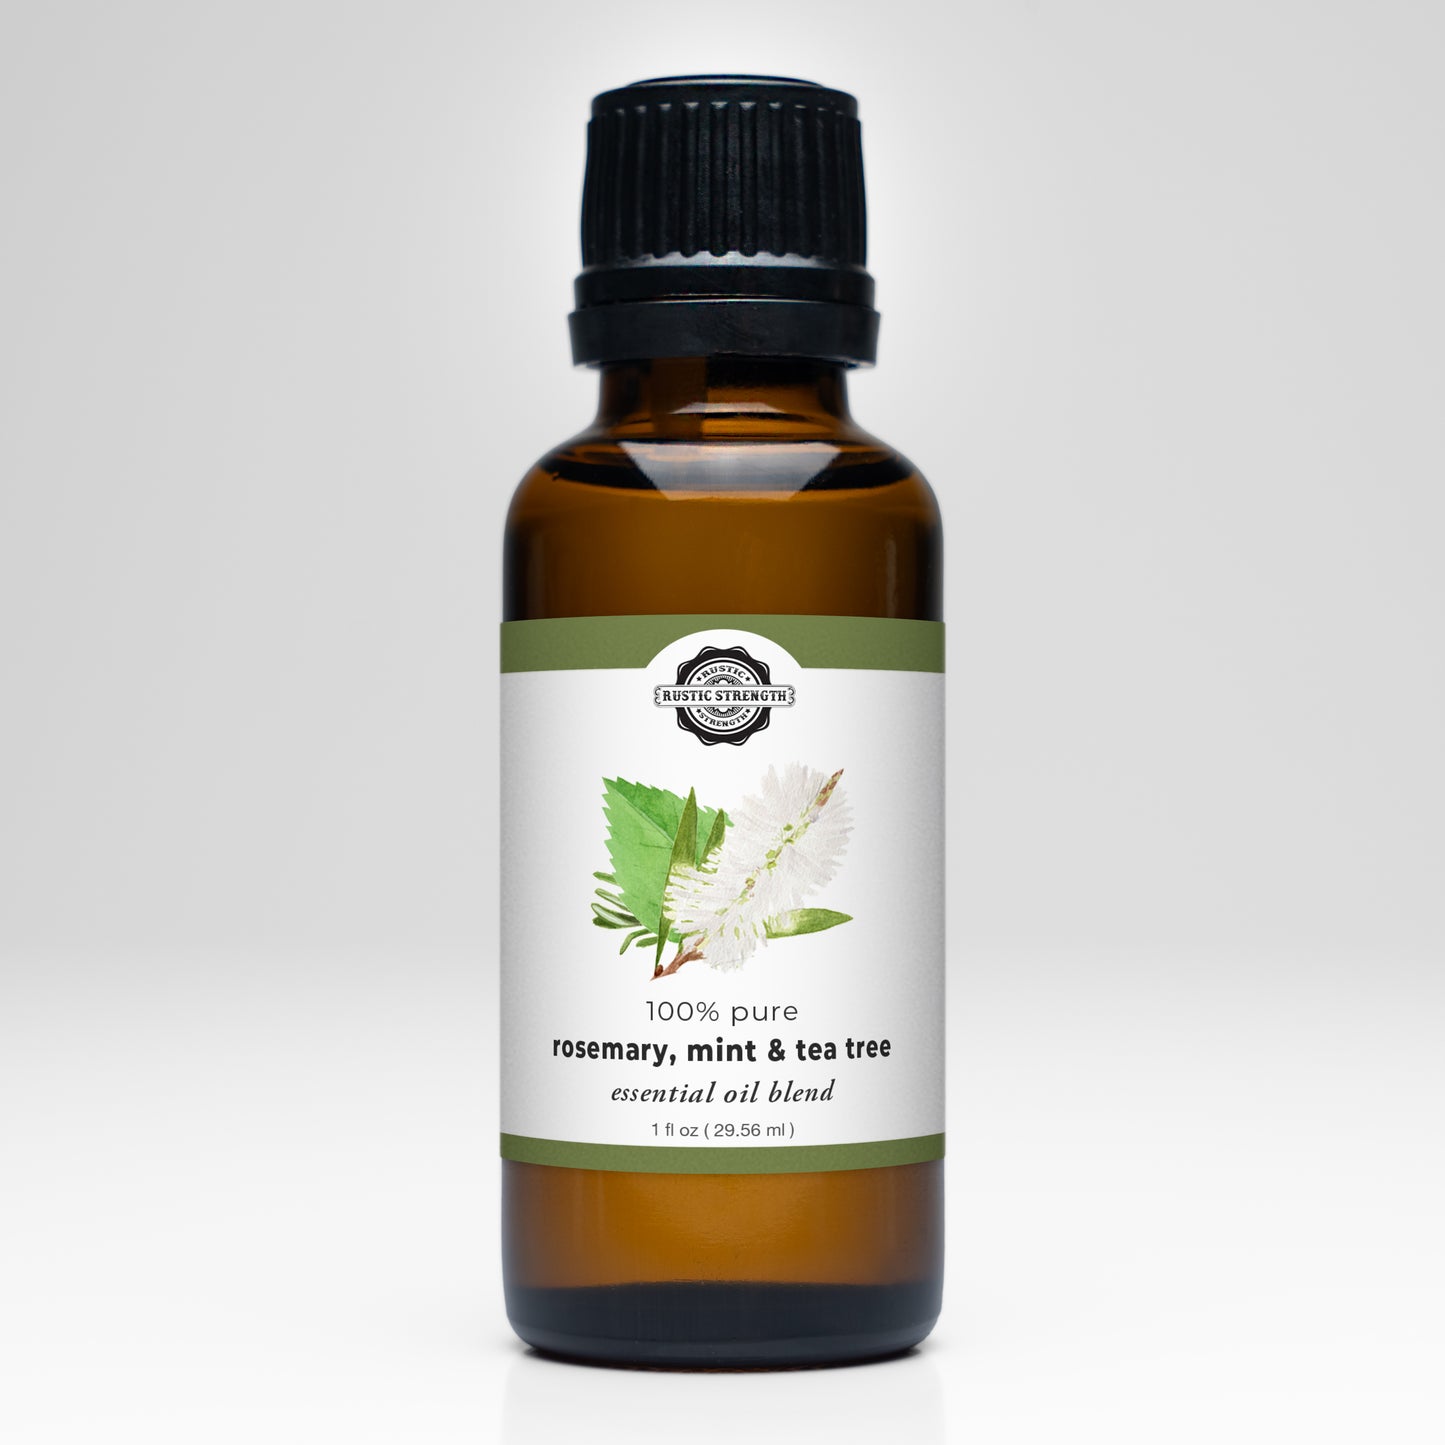 Rosemary, Mint & Tea Tree Essential Oil Blend